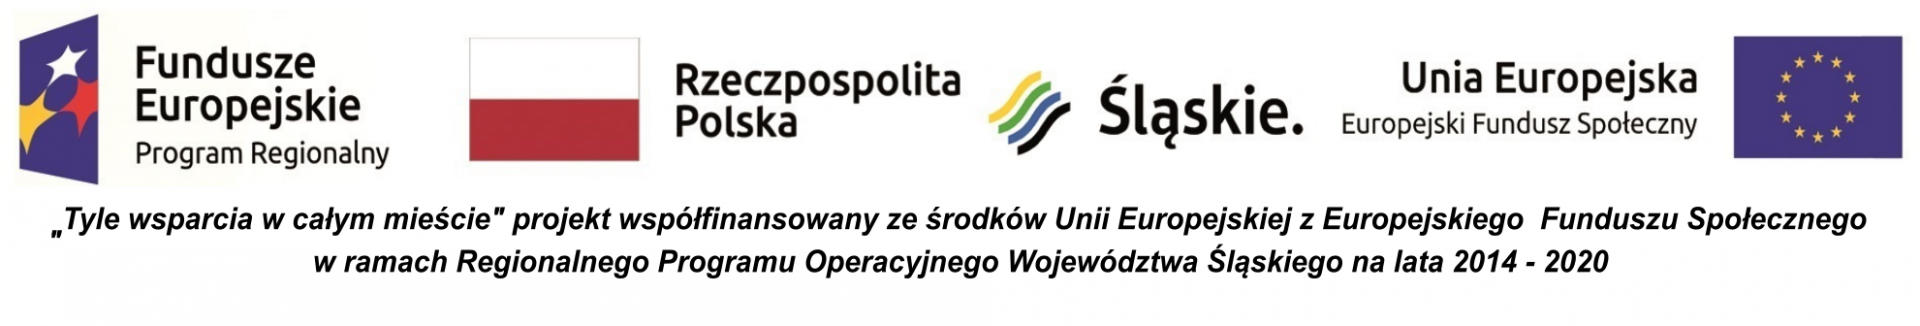 Zestawienie 4 znaków: Znak Funduszy Europejskich Program Regionalny, Znak barw Rzeczpospolitej Polski, logo województwa śląskiego, Znak Unii Europejskiej